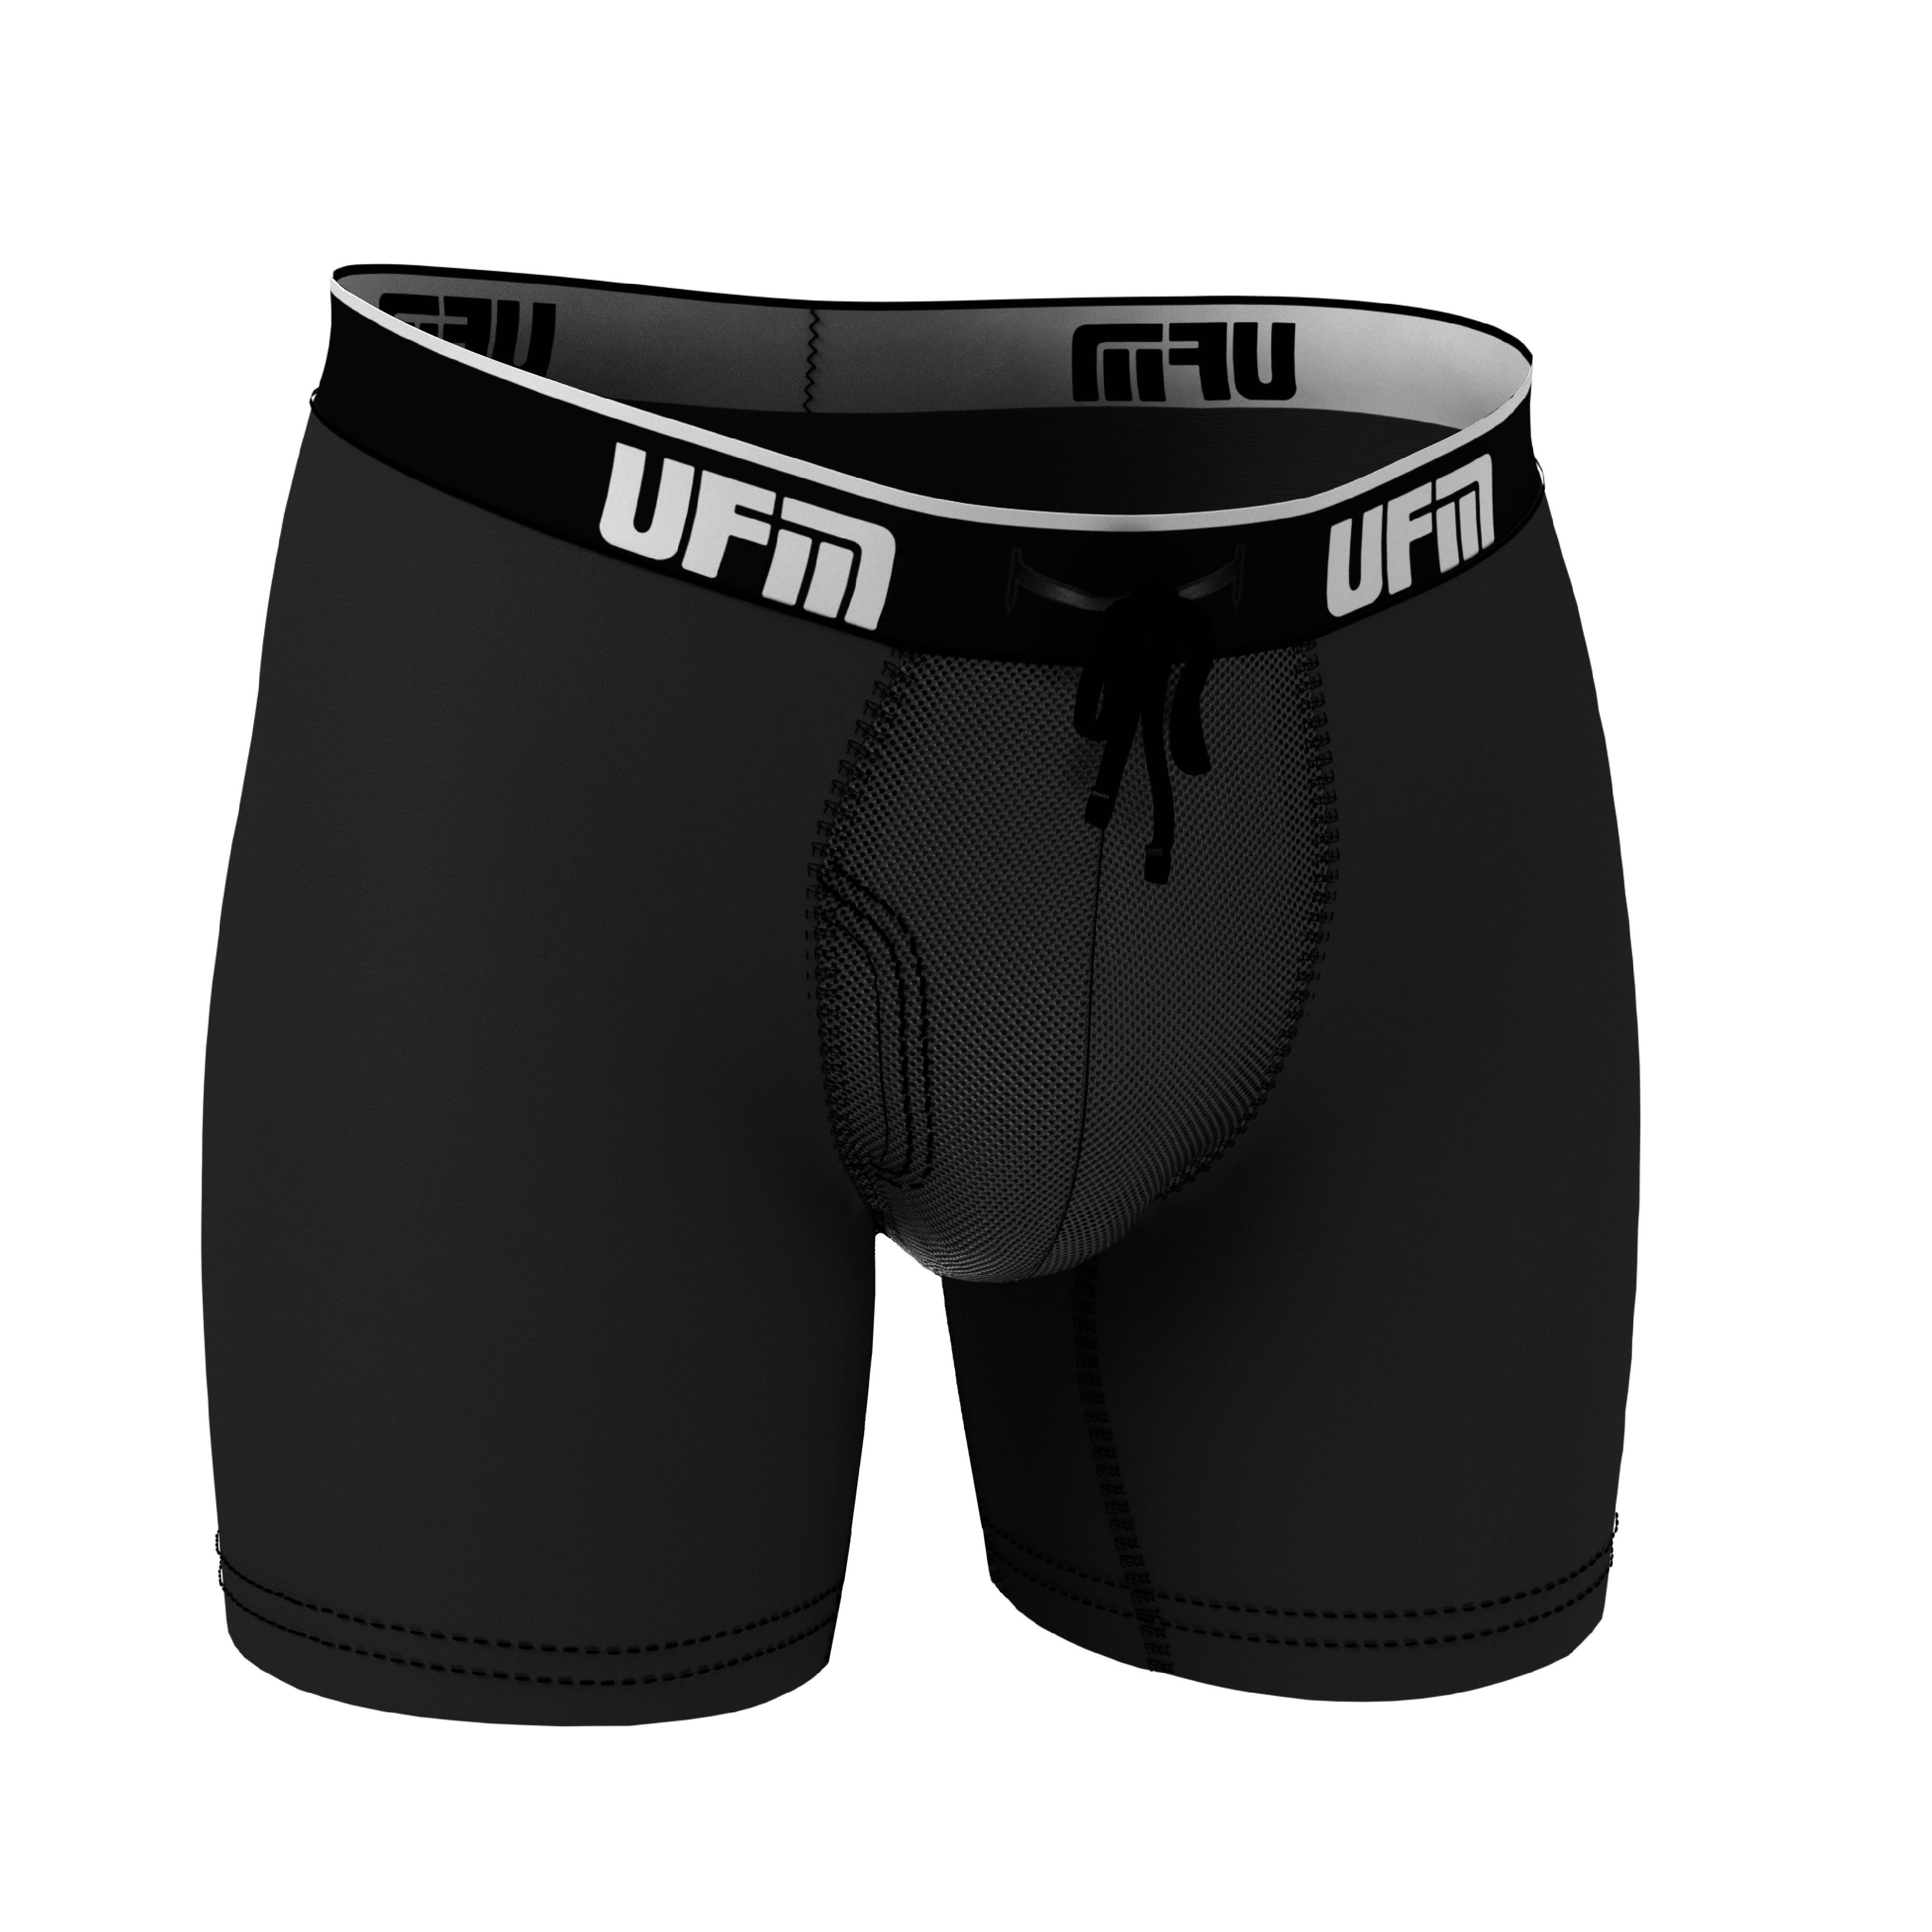 UFM Mens Underwear, 6 Inch Inseam Poly-Spandex Mens Boxer Briefs,  Adjustable REG Support Pouch Mens Boxers, 44-46(2XL) Waist, Black